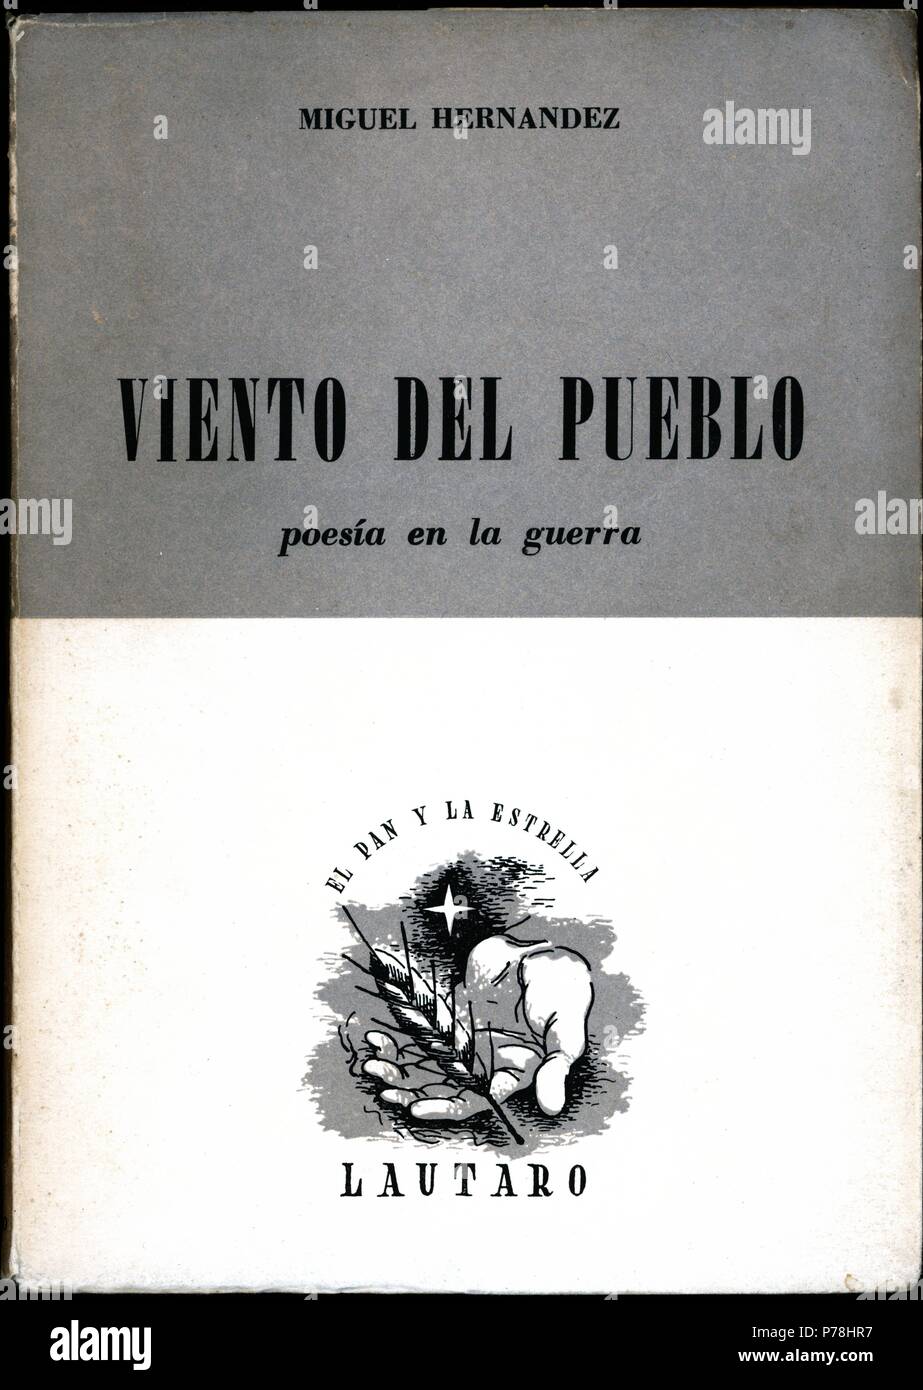 Portada del libro Viento del Pueblo, del poeta Miguel Hernández Gilabert (1910-1942). Editorial Lautaro, de Buenos Aires, año 1956. Stock Photo